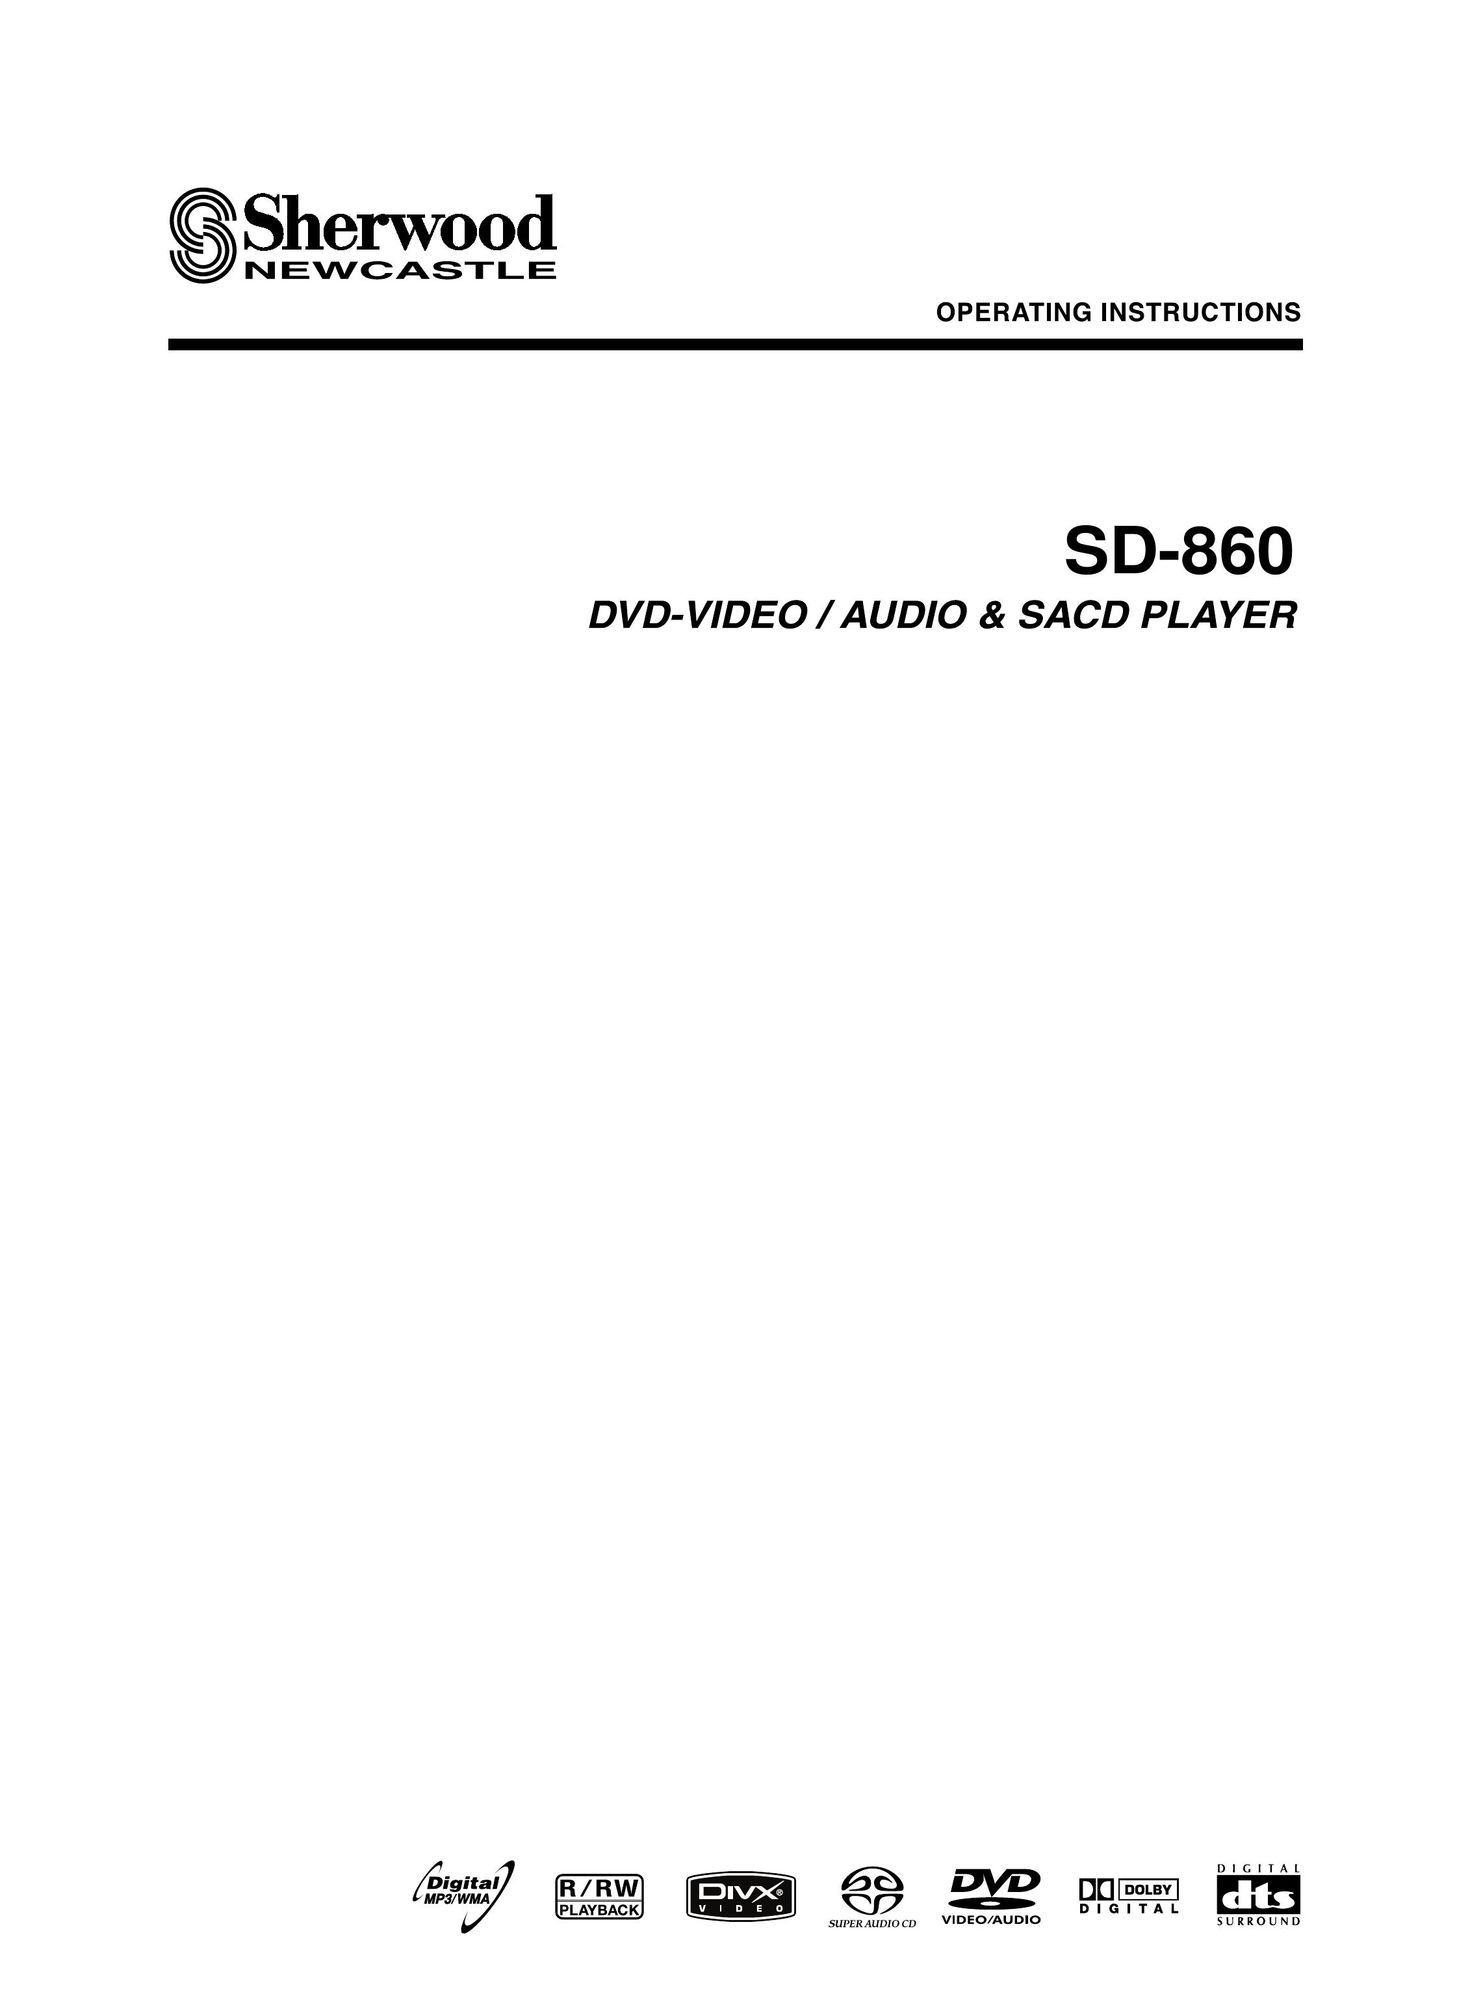 Sherwood SD-860 DVD Player User Manual